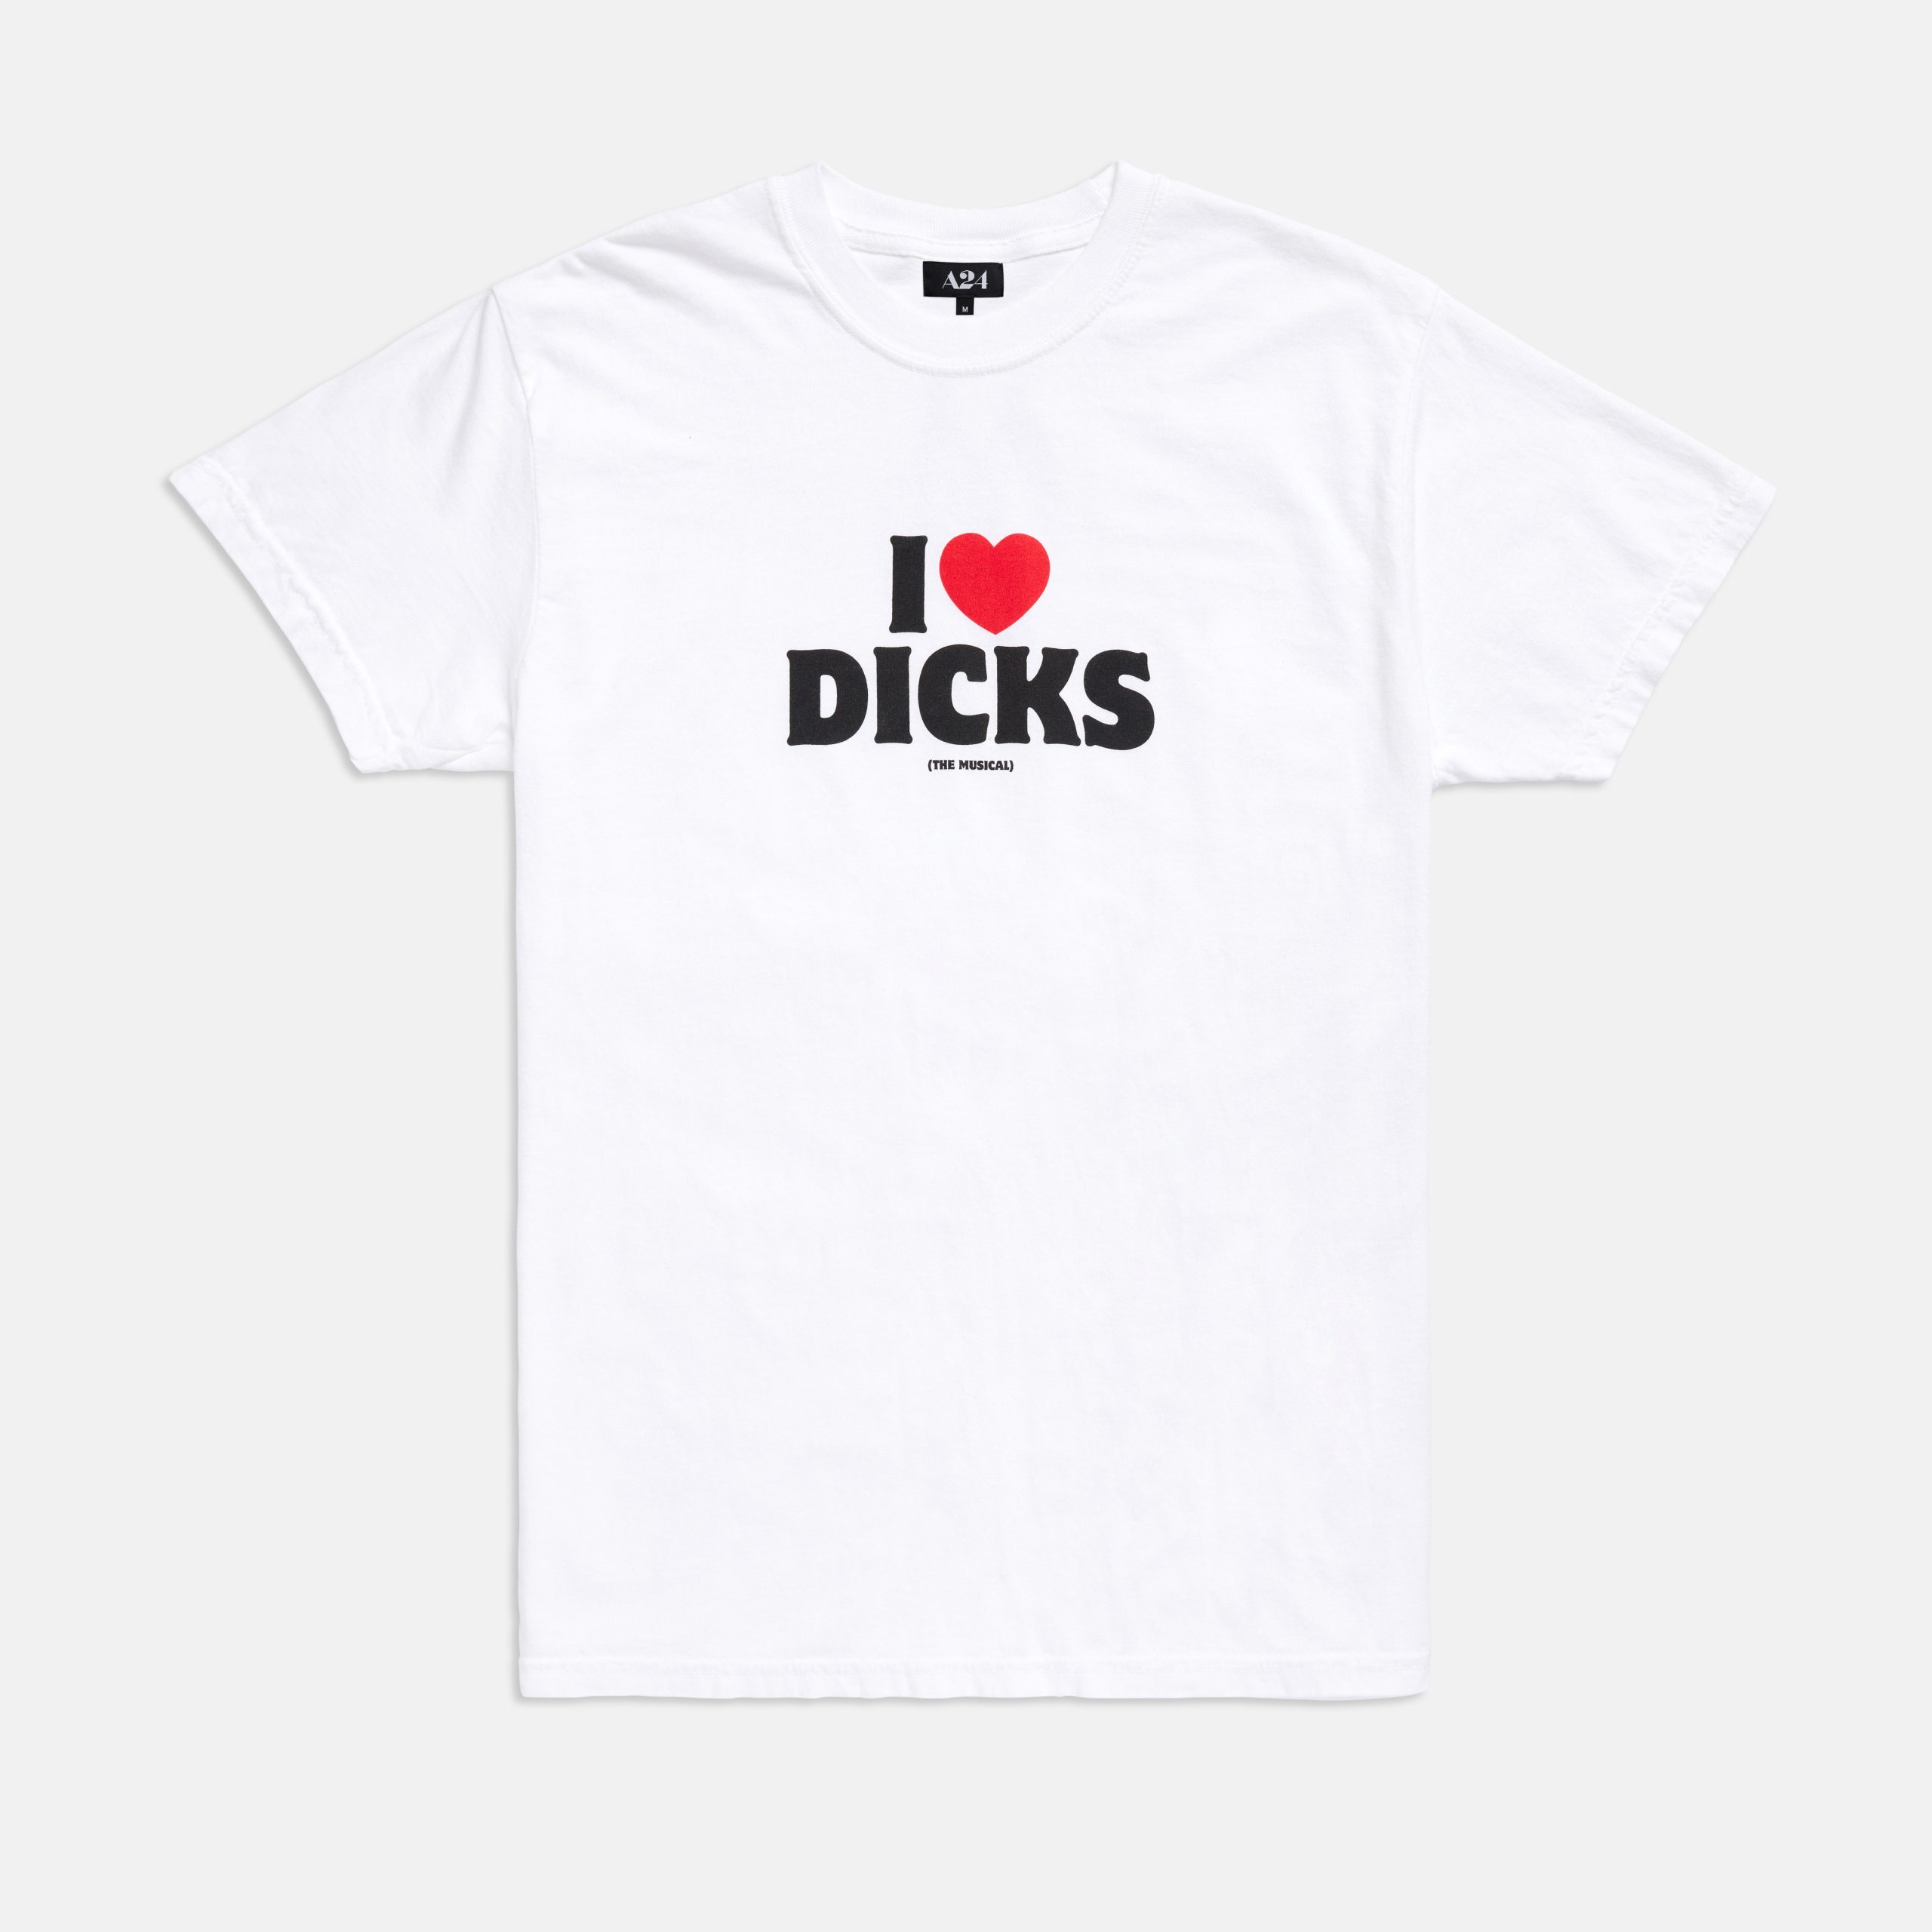 A24’s “Dicks: The Musical” T-Shirt